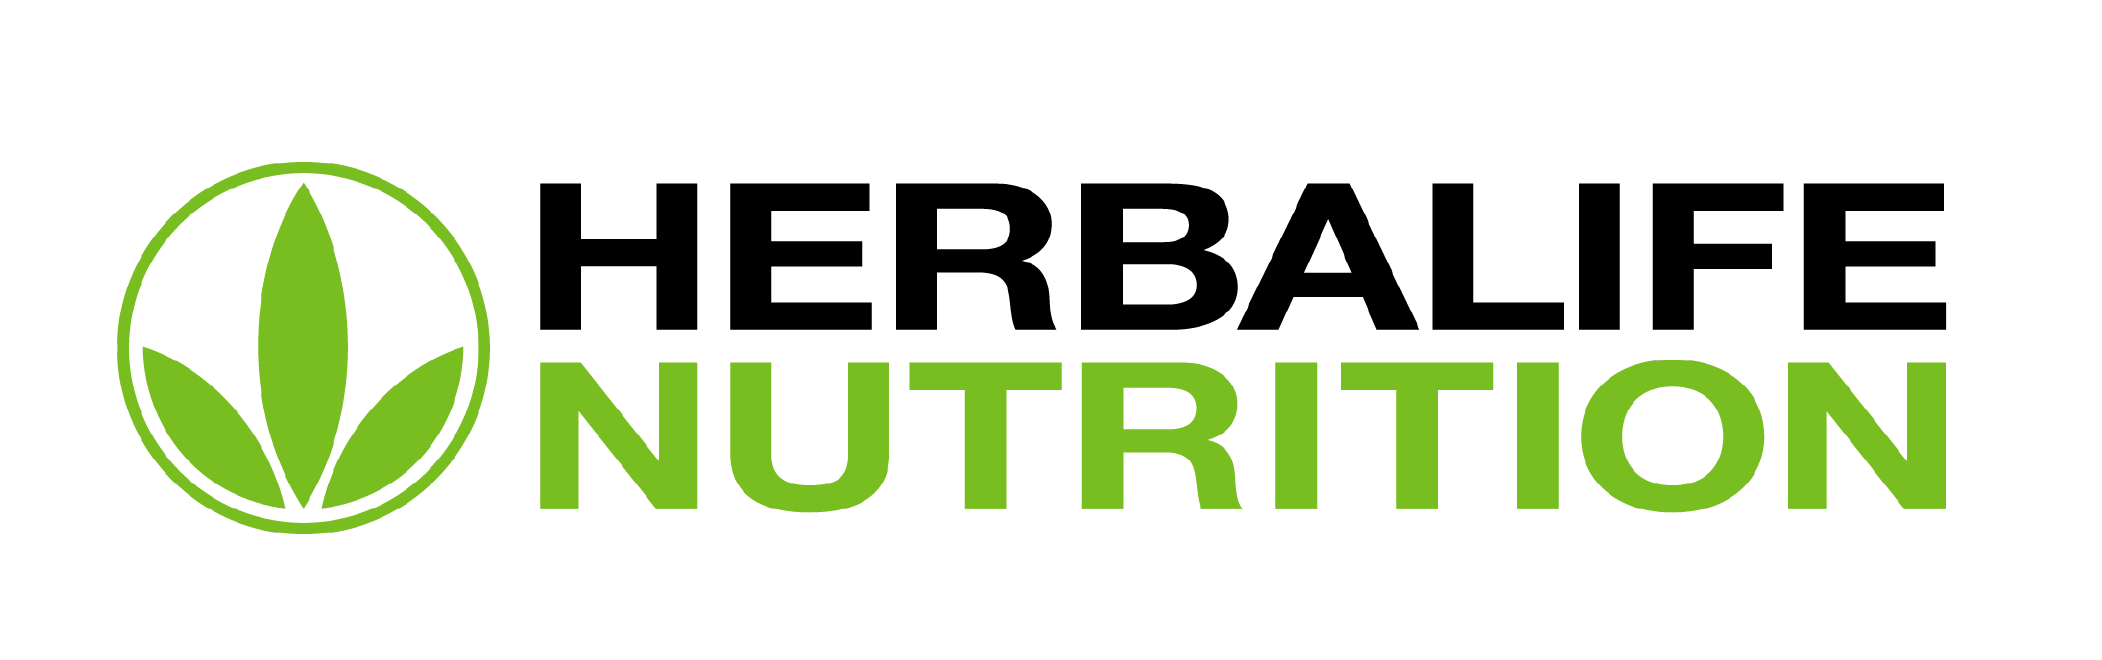 Media Assets Herbalife Nutrition Ltd